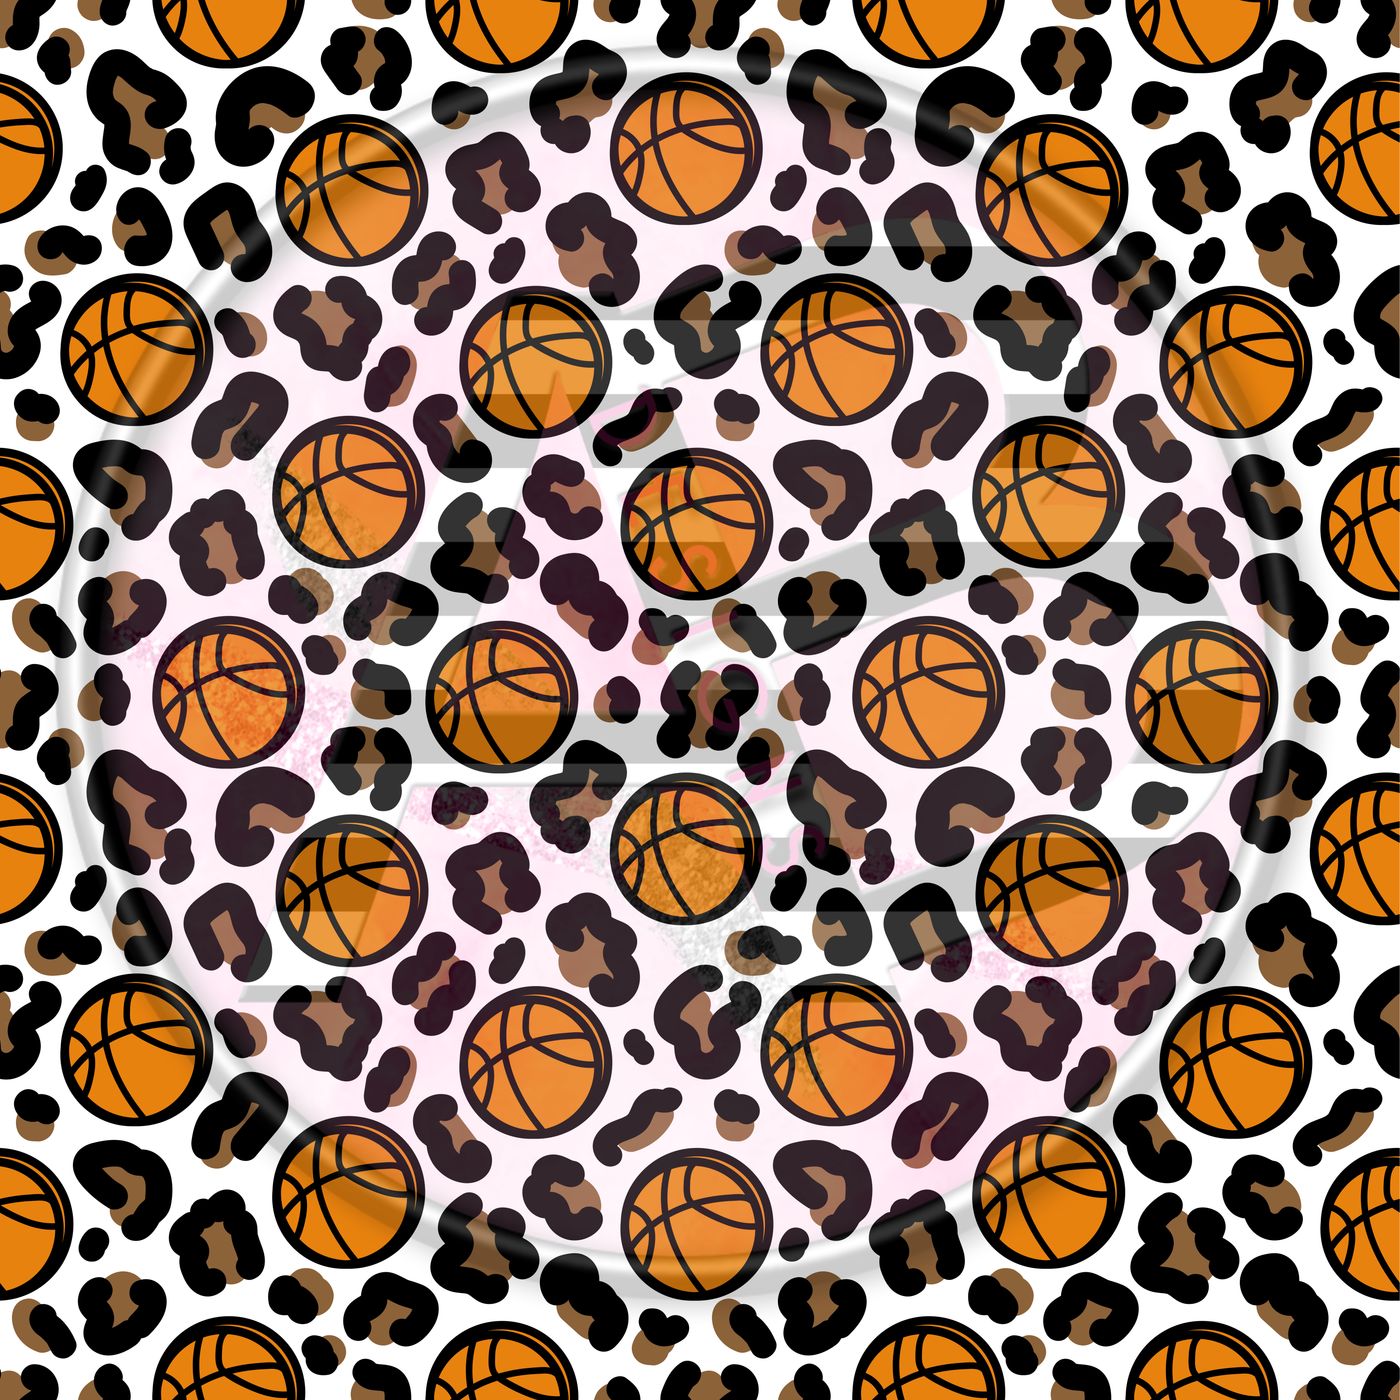 Adhesive Patterned Vinyl - Basketball Cheetah